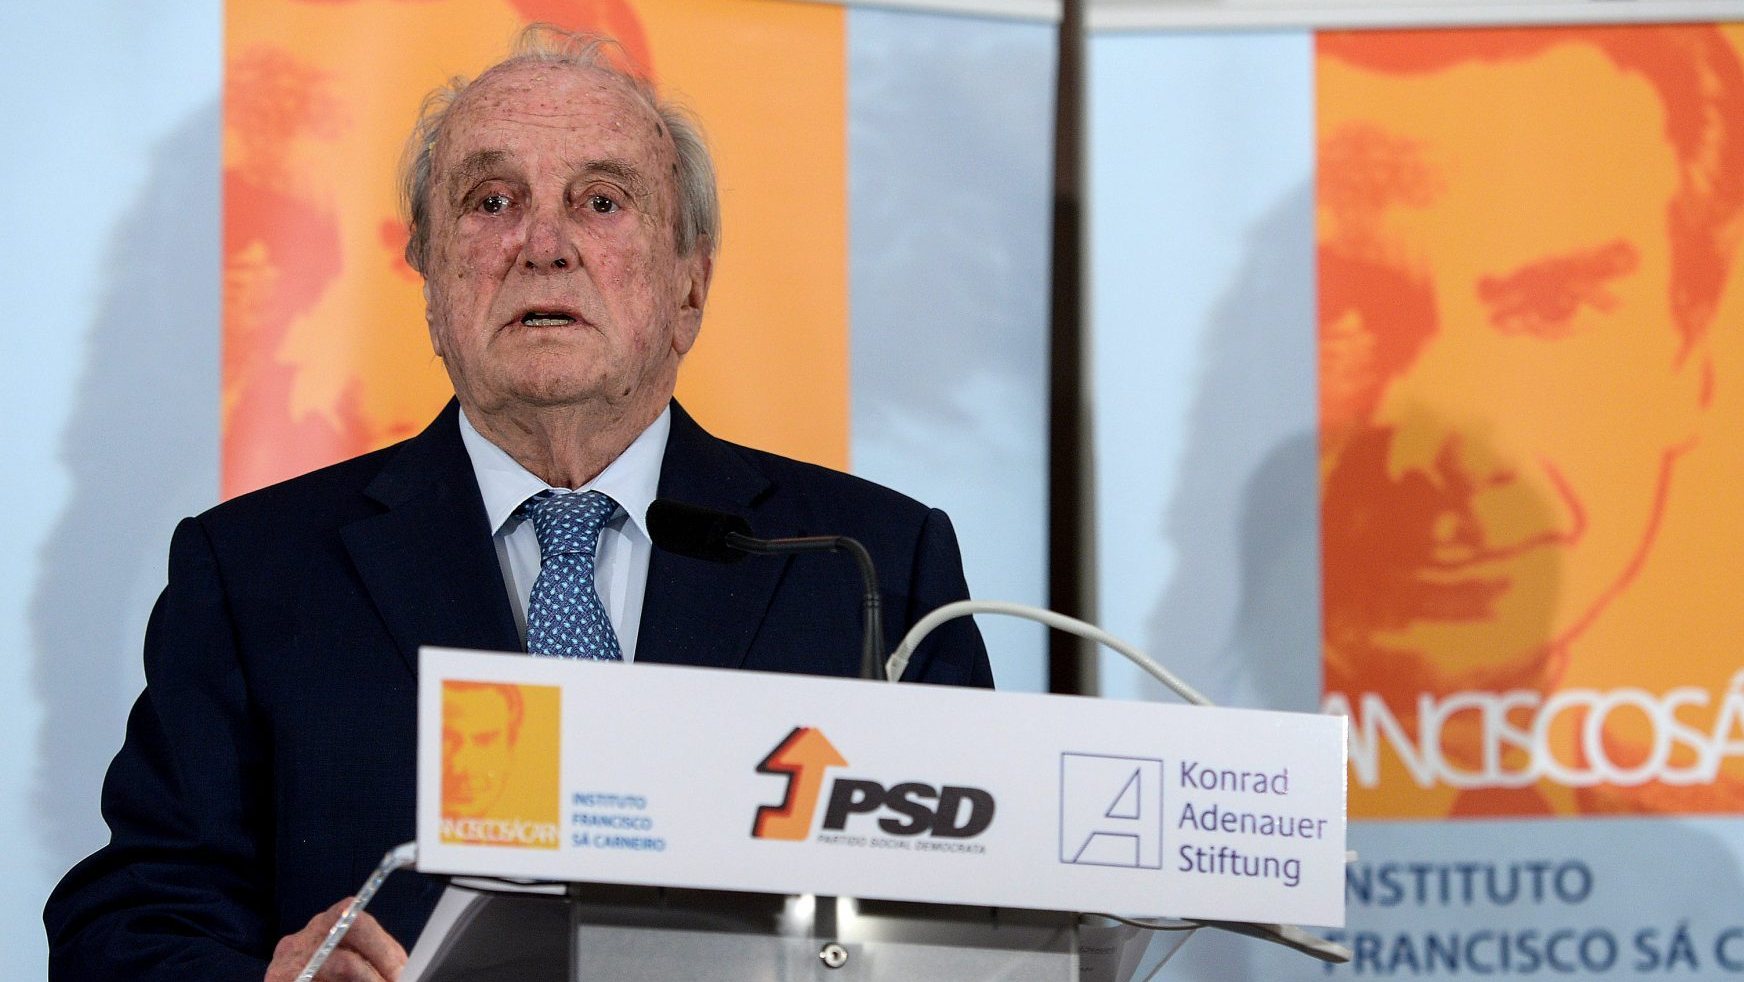 Francisco Pinto Balsemão, discursa durante a conferência “Princípios e valores de Sá Carneiro no séc. XXI”, que decorreu no Porto, 2 de dezembro de 2018.